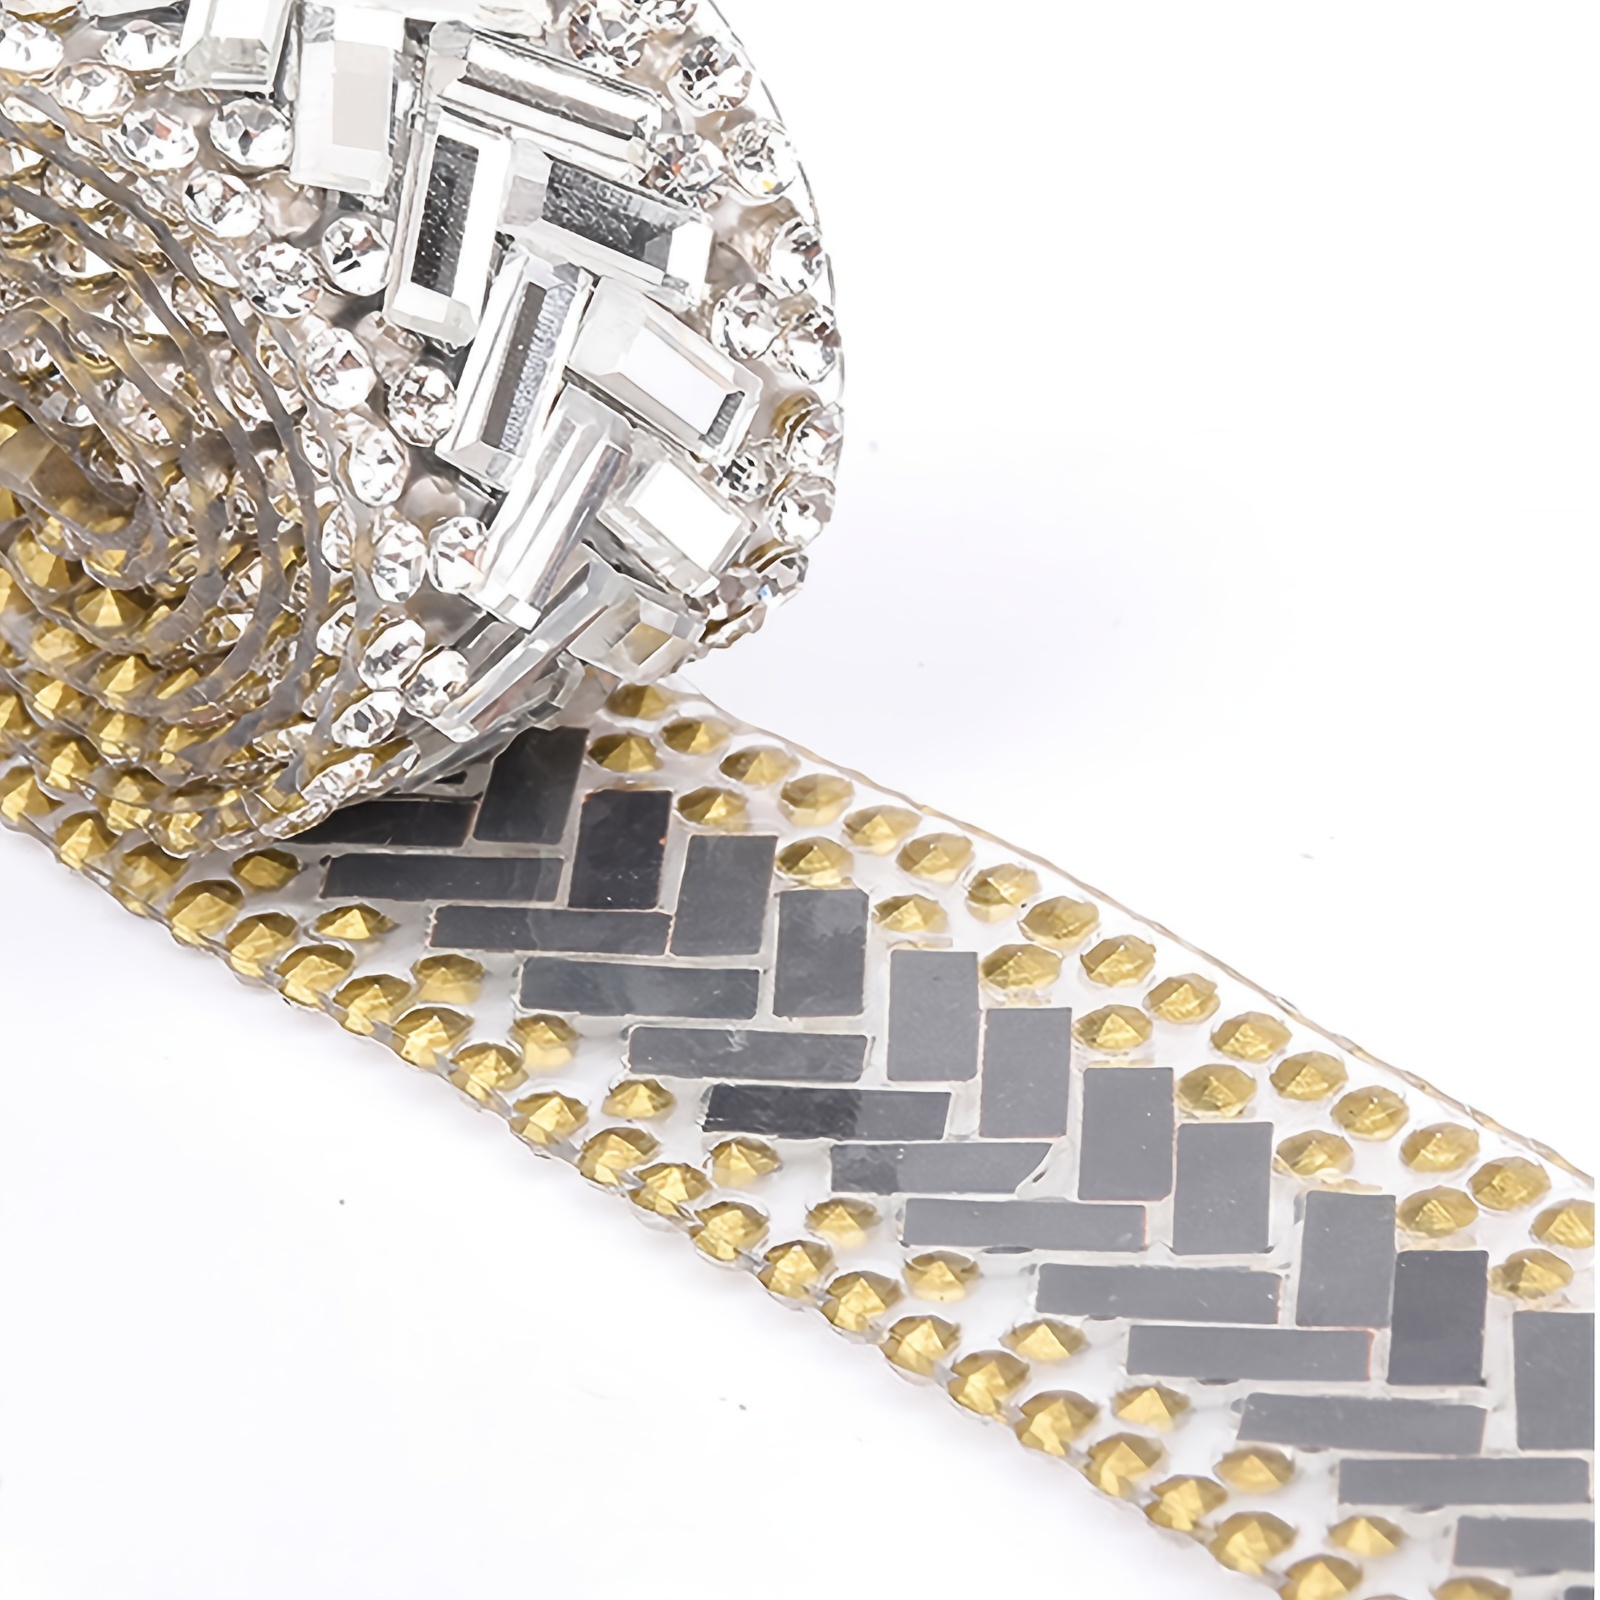 Hoja SILVER DIAMANTE CRAFT 8 filas de tiras de diamantes de imitación  brillantes. 1,5 m para manualidades y adornos para hacer joyas. -   México